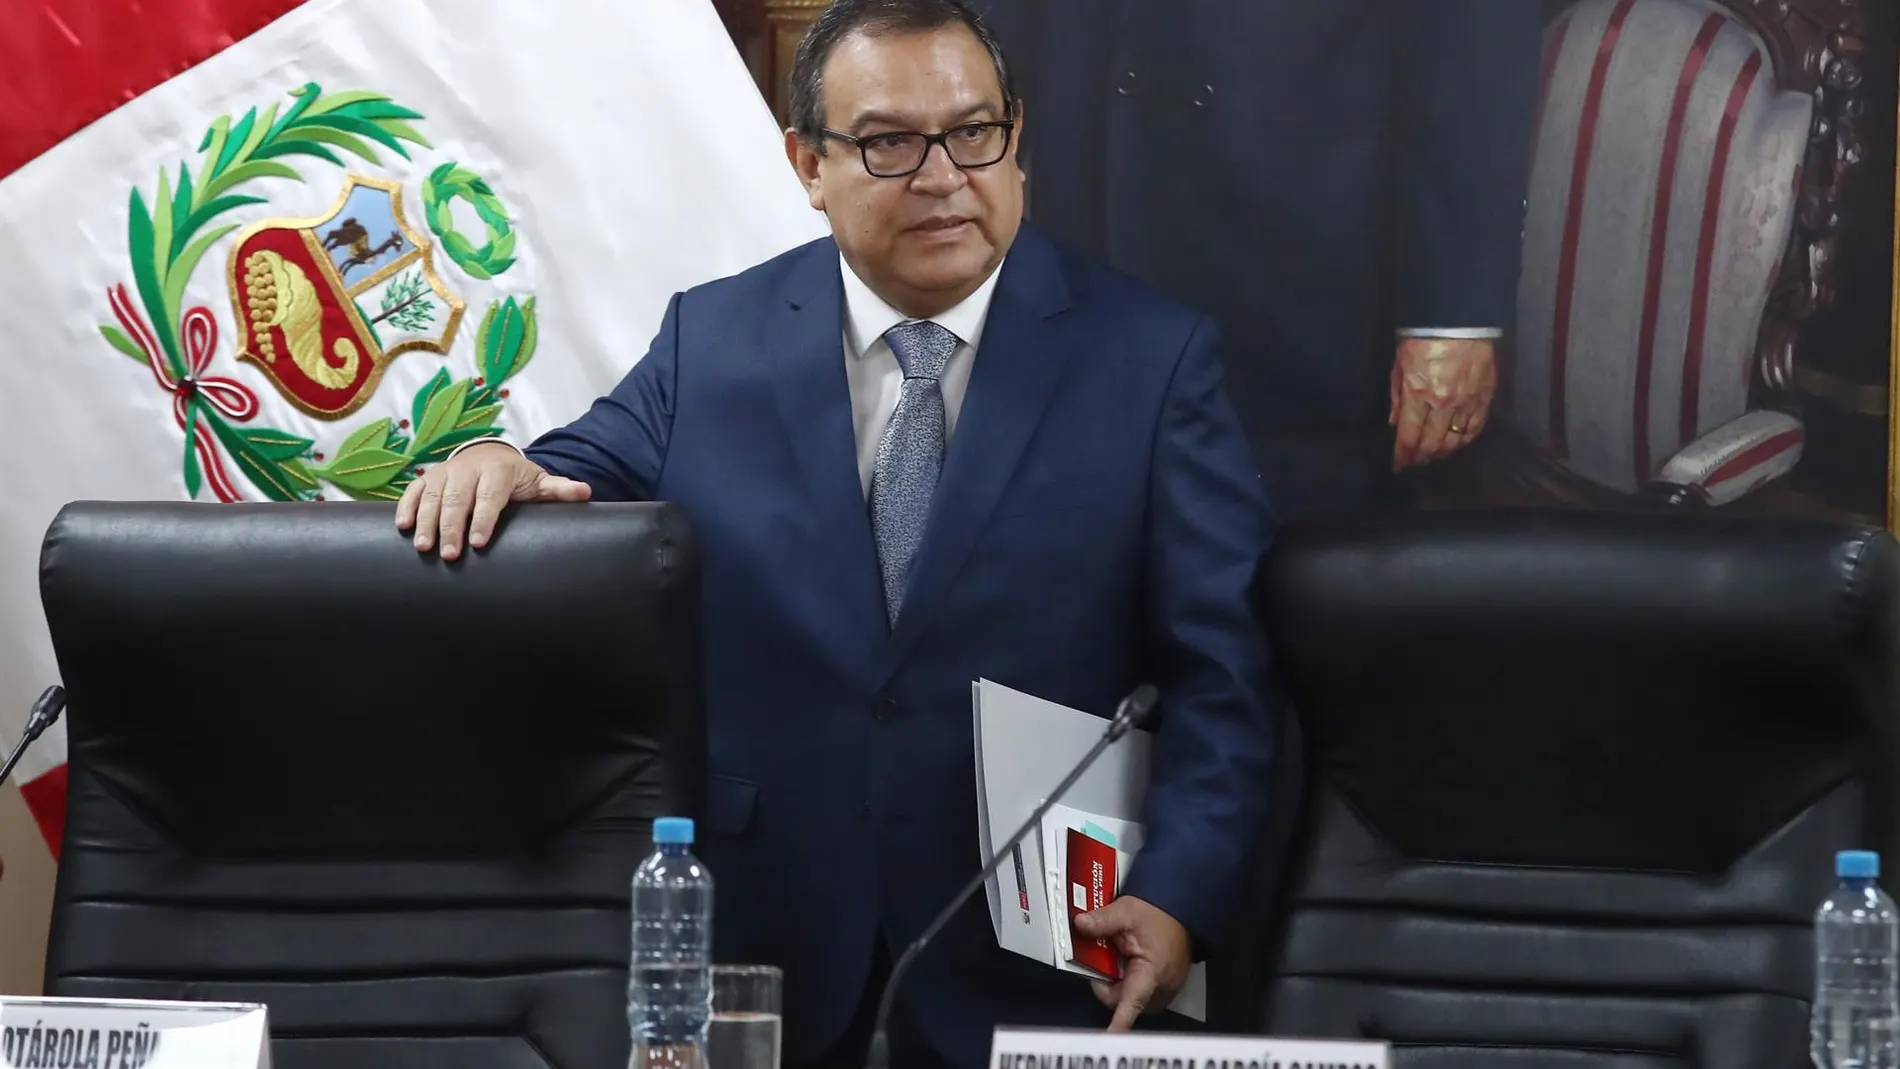 Perú.-Alberto Otárola renuncia al cargo de primer ministro de Perú tras el escándalo por supuesta contratación irregular